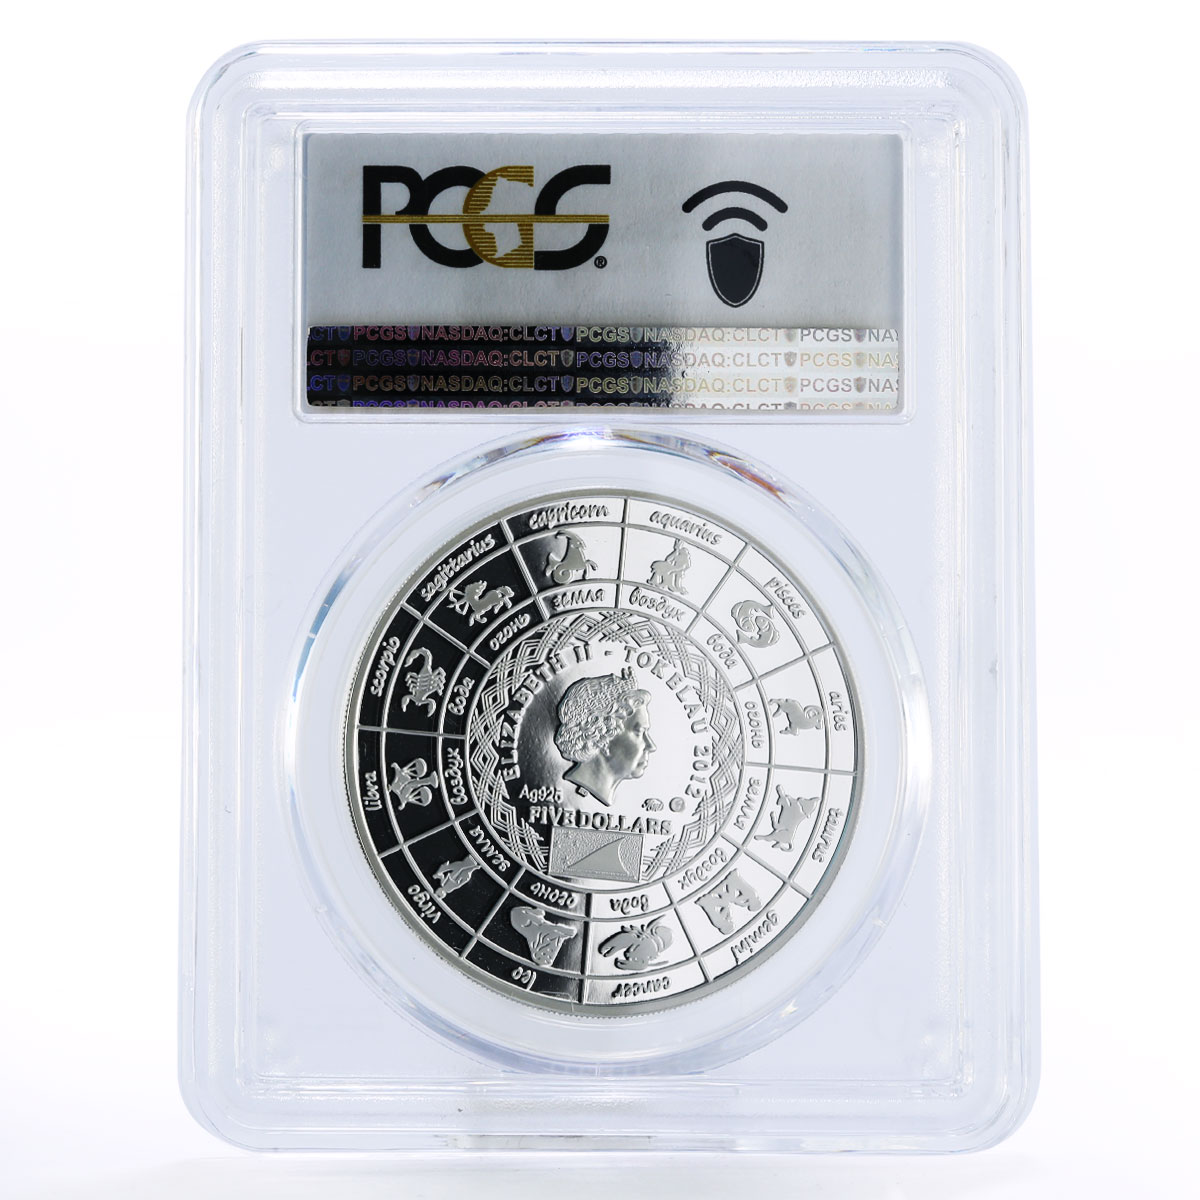 Tokelau 5 dollars Zodiac Signs series Sagittarius PR69 PCGS silver coin 2012